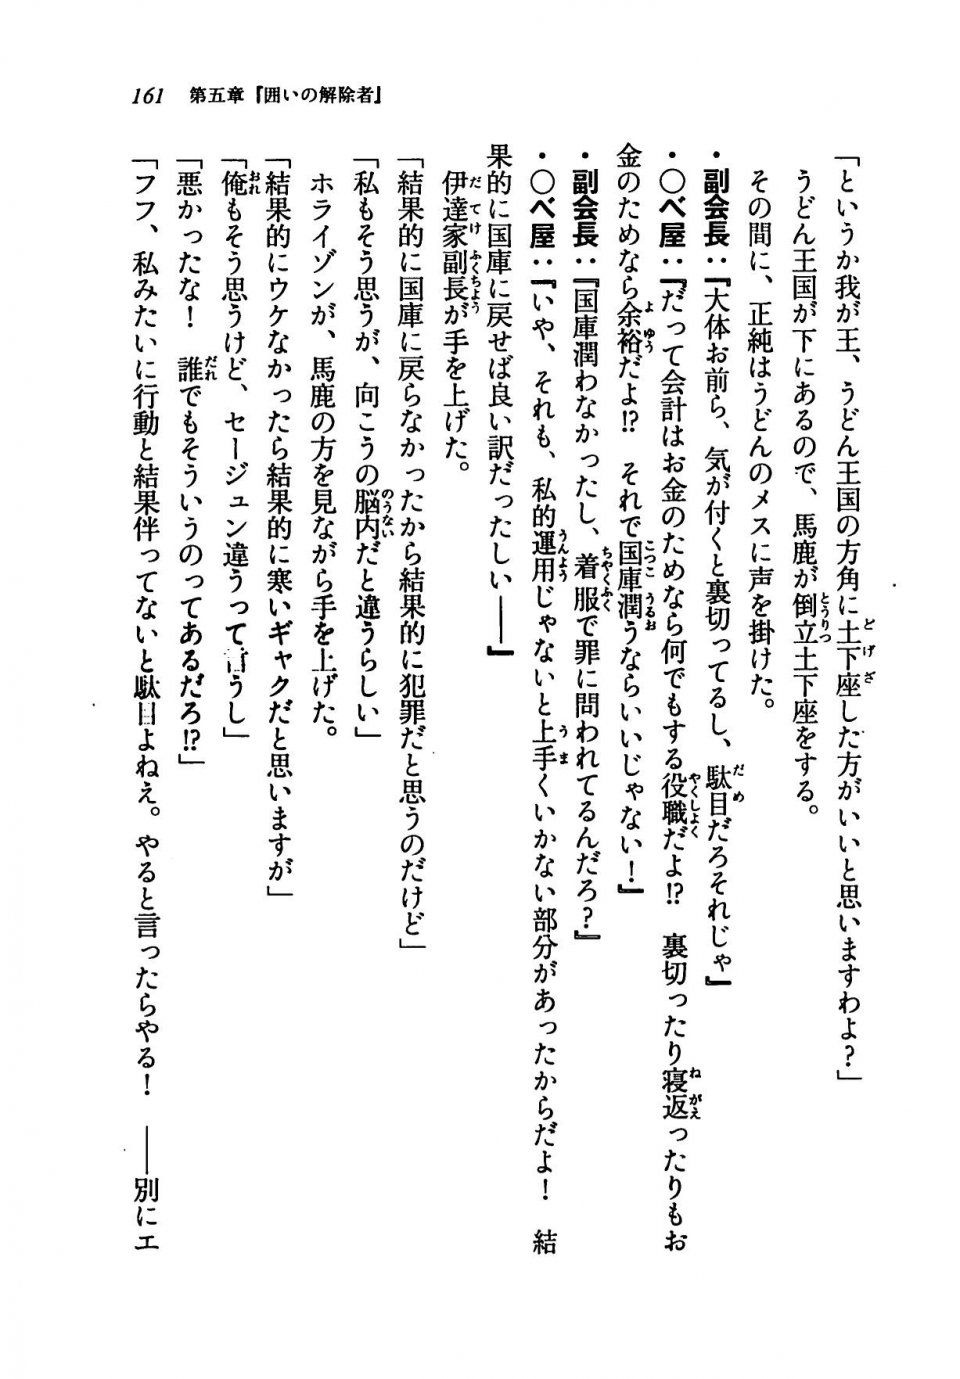 Kyoukai Senjou no Horizon LN Vol 19(8A) - Photo #161